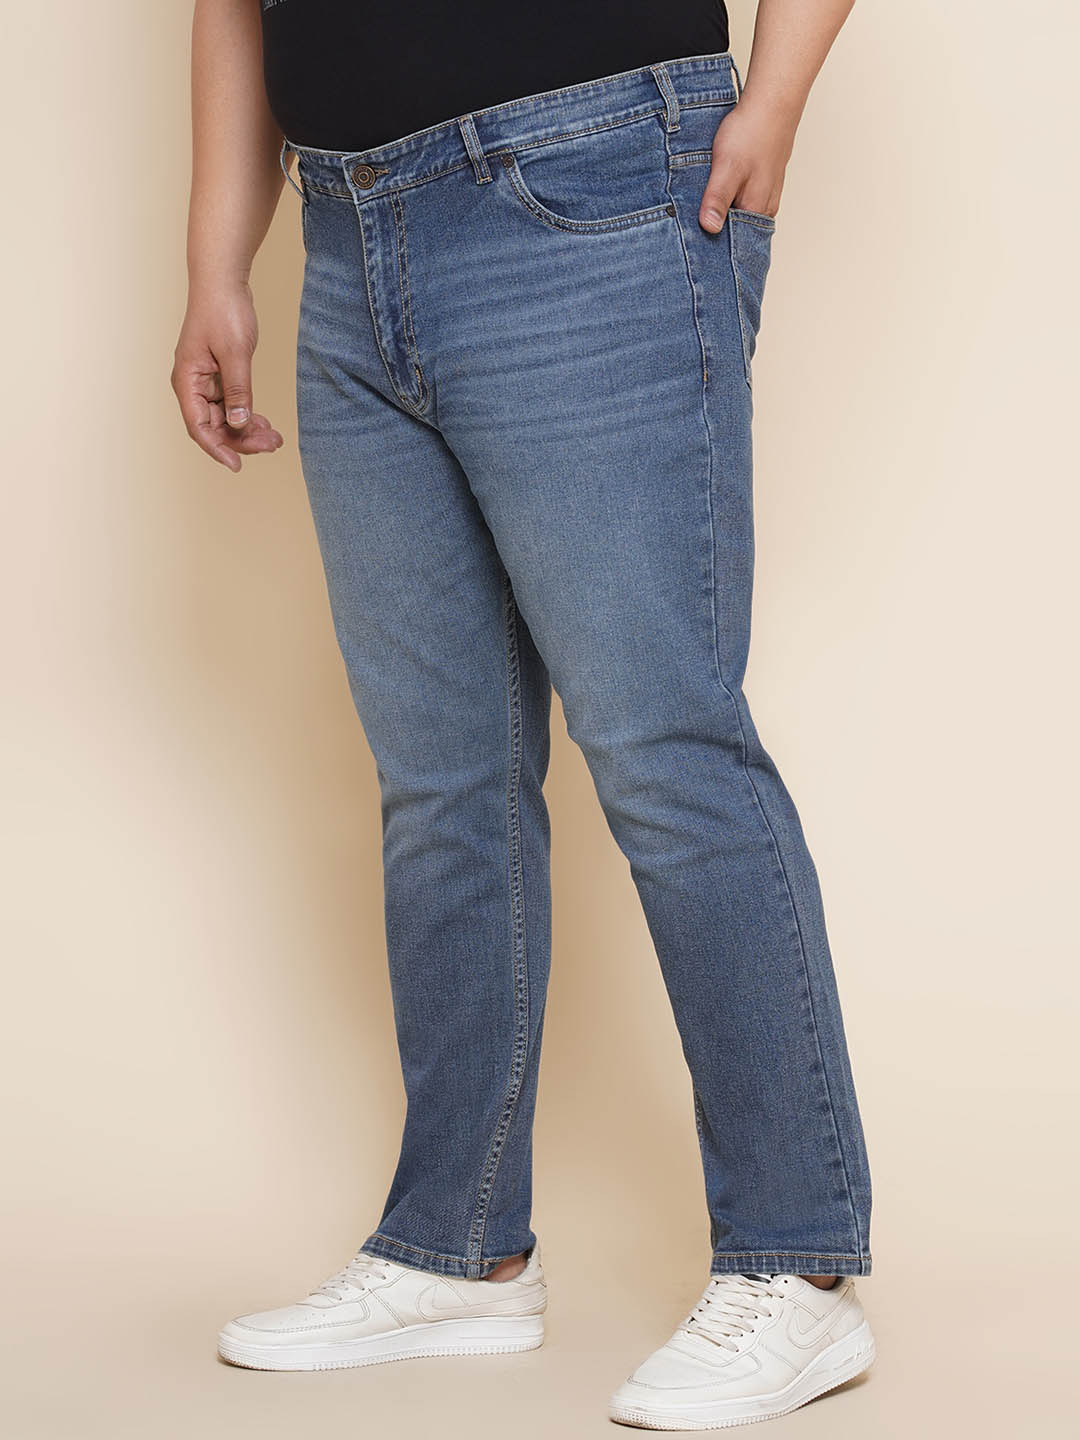 bottomwear/jeans/JPJ270125/jpj270125-4.jpg